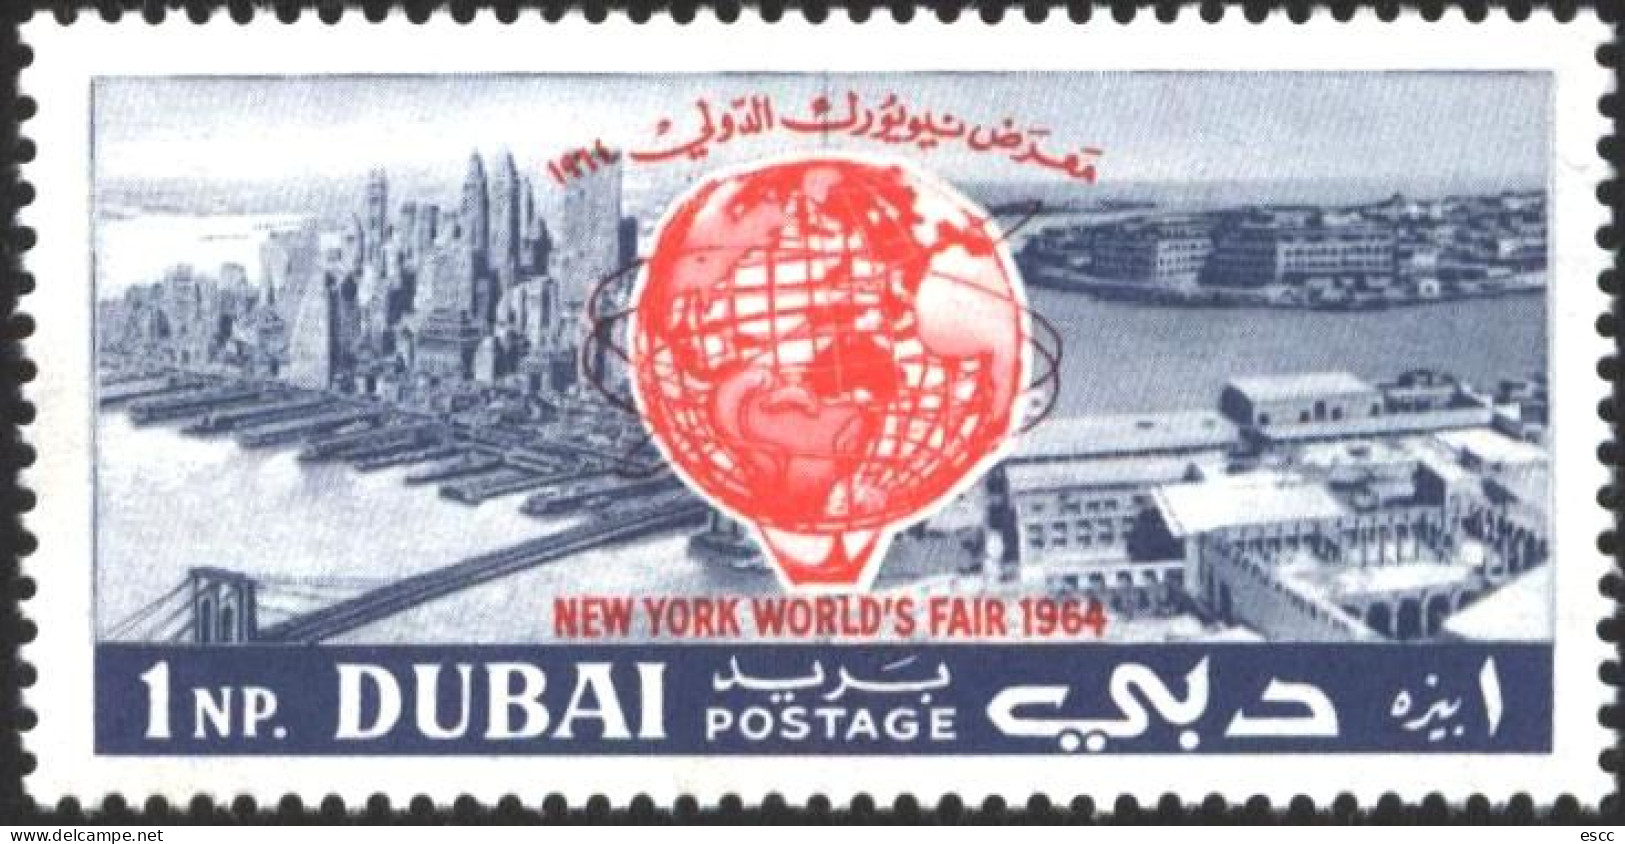 Mint Stamp  New York Fair 1964  From Dubai - Dubai